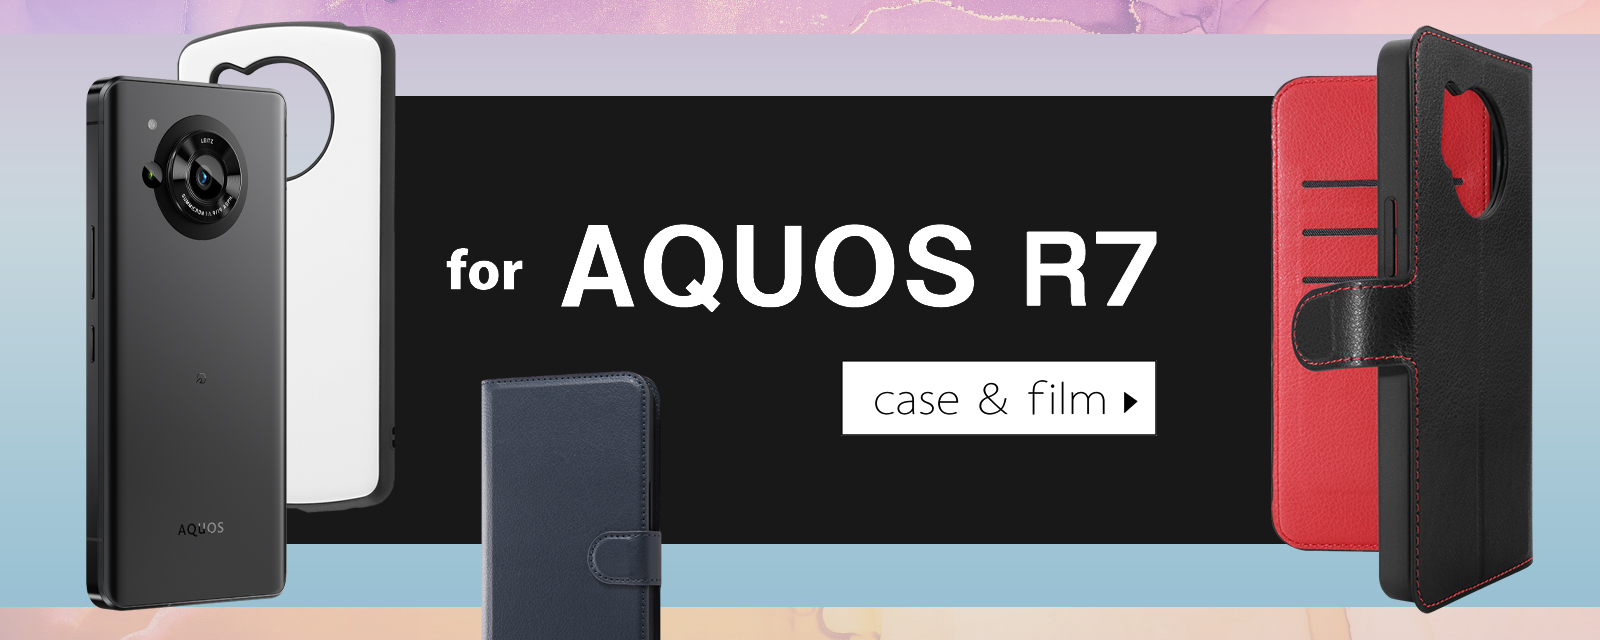 AQUOS R7、AQUOS WISH2に対応したスマホケース・保護フィルムが株式会社レイ・アウトより発売決定！ | NEWSCAST